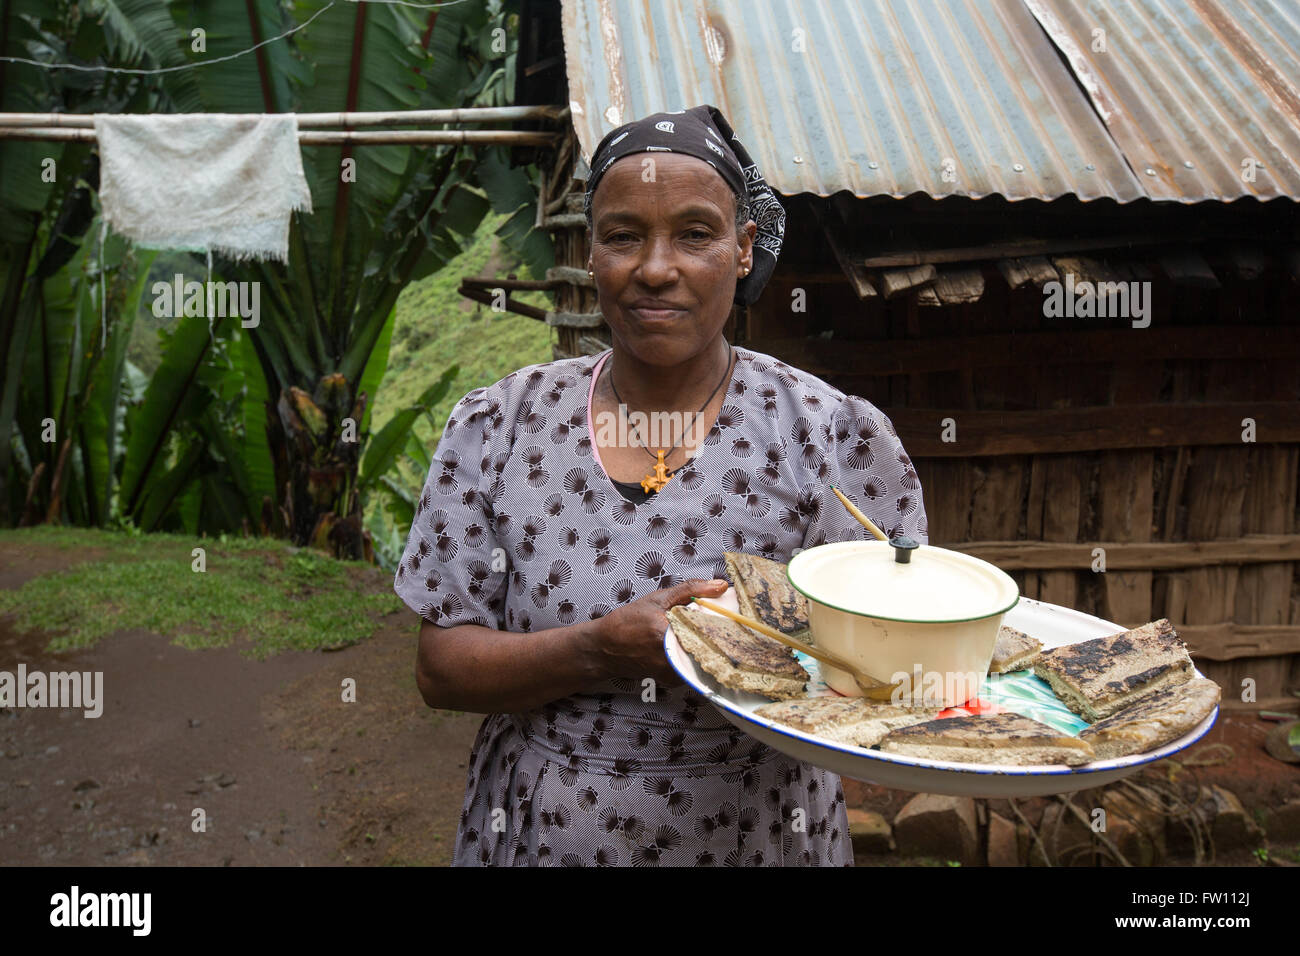 Gibi Gurage village, l'Éthiopie, octobre 2013 Maraganesh Waldemikel, 60 ans, se prépare avec du fromage et pain kocho vert légumes cuits. Banque D'Images